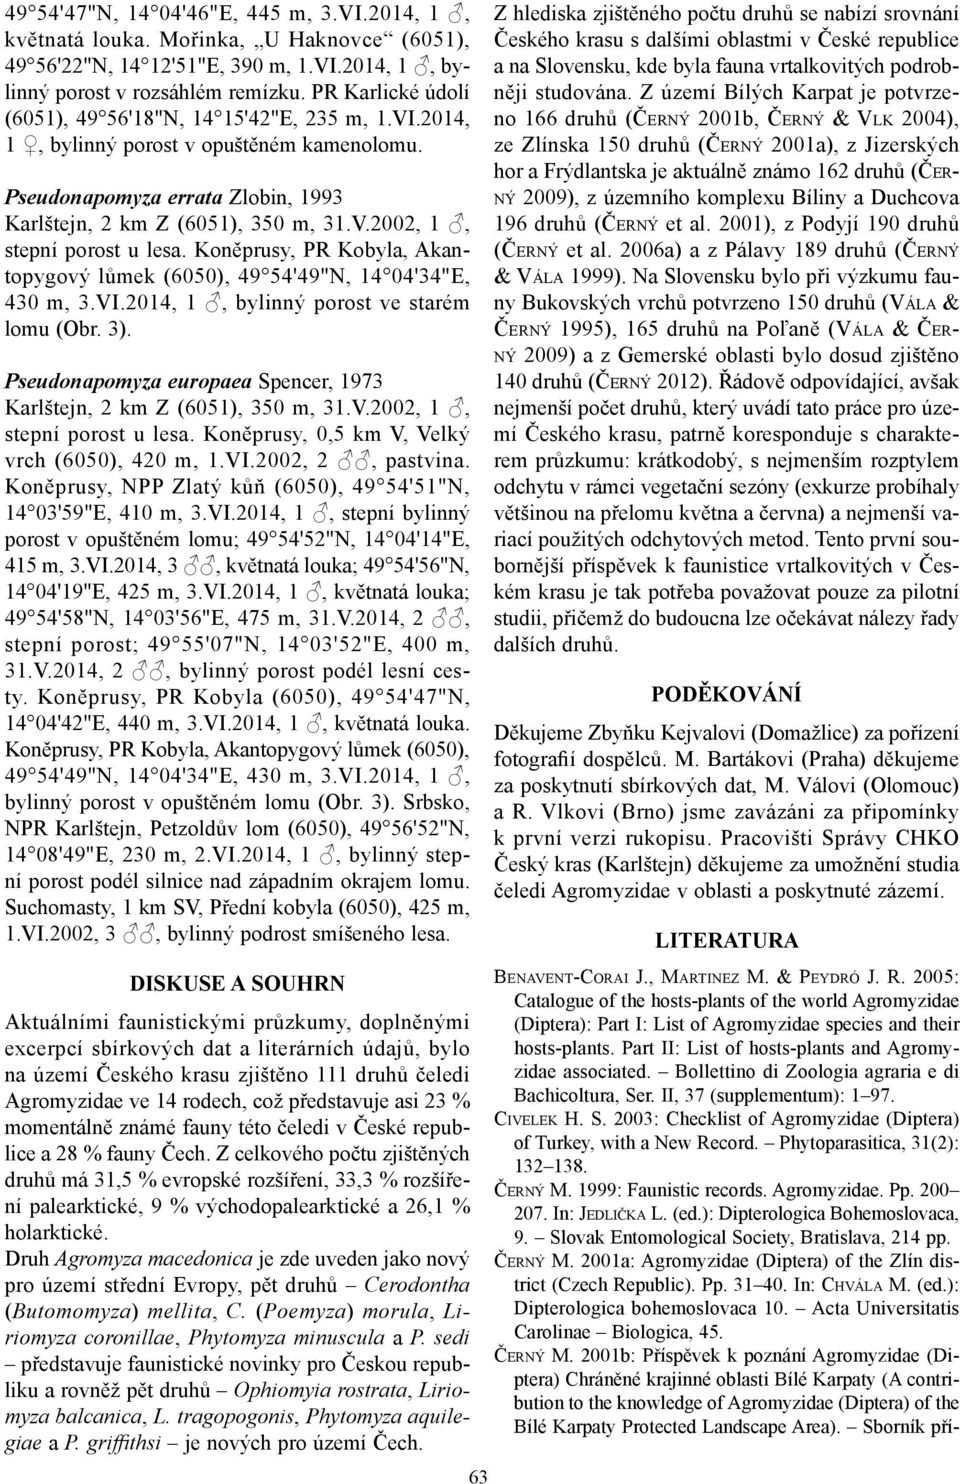 Koněprusy, PR Kobyla, Akantopygový lůmek (6050), 49 54'49"N, 14 04'34"E, 430 m, 3.VI.2014, 1, bylinný porost ve starém lomu (Obr. 3).